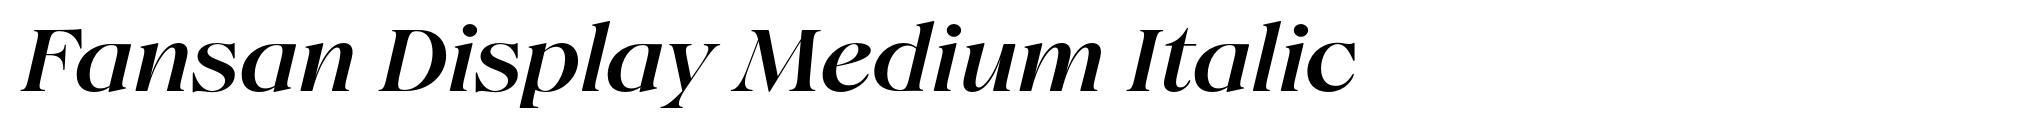 Fansan Display Medium Italic image